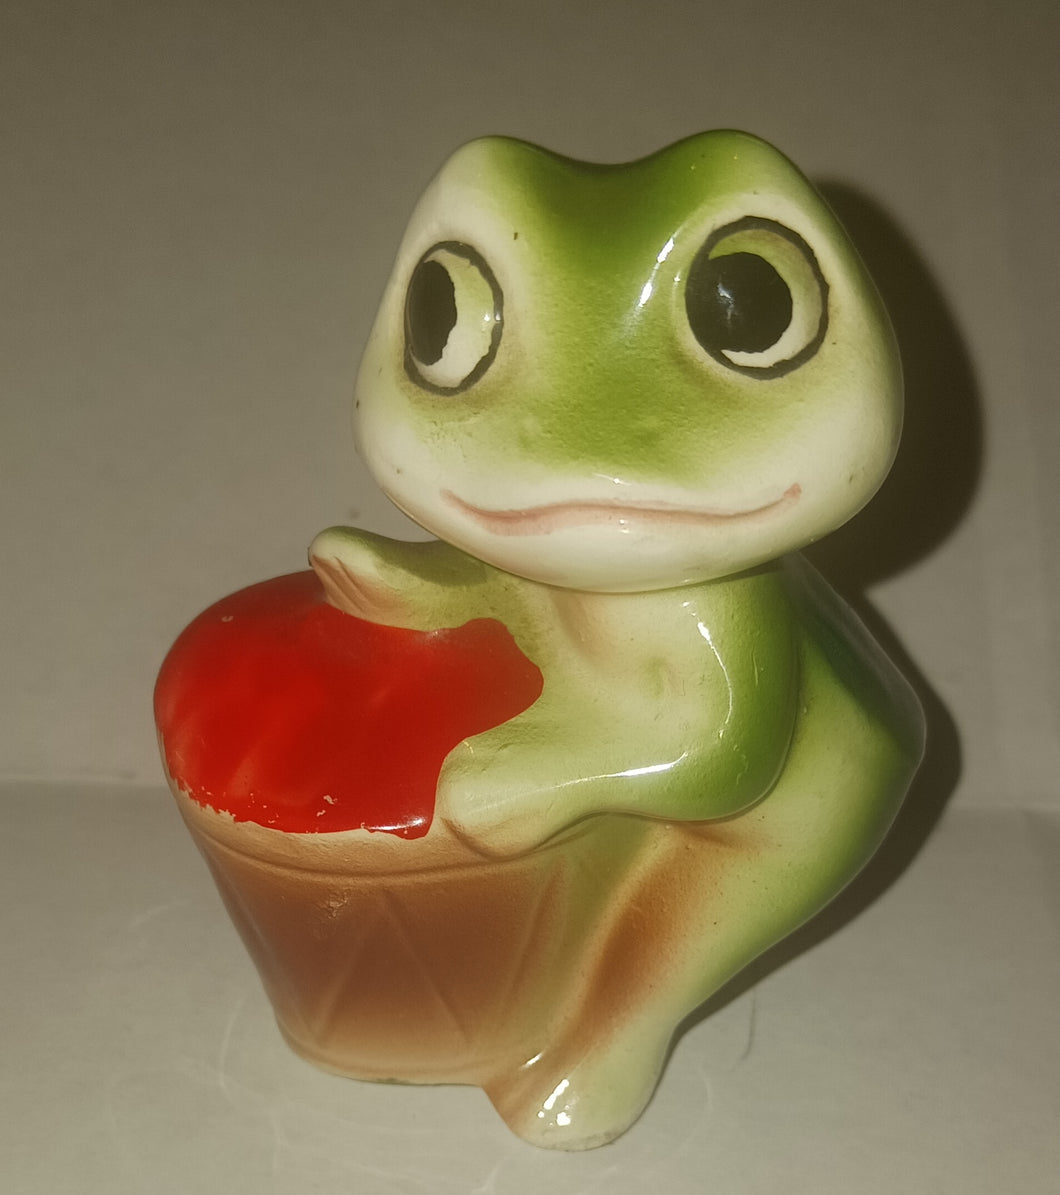 Vintage Frog Drummer Pepper Shaker Japan Foil Label Ceramic 1950s